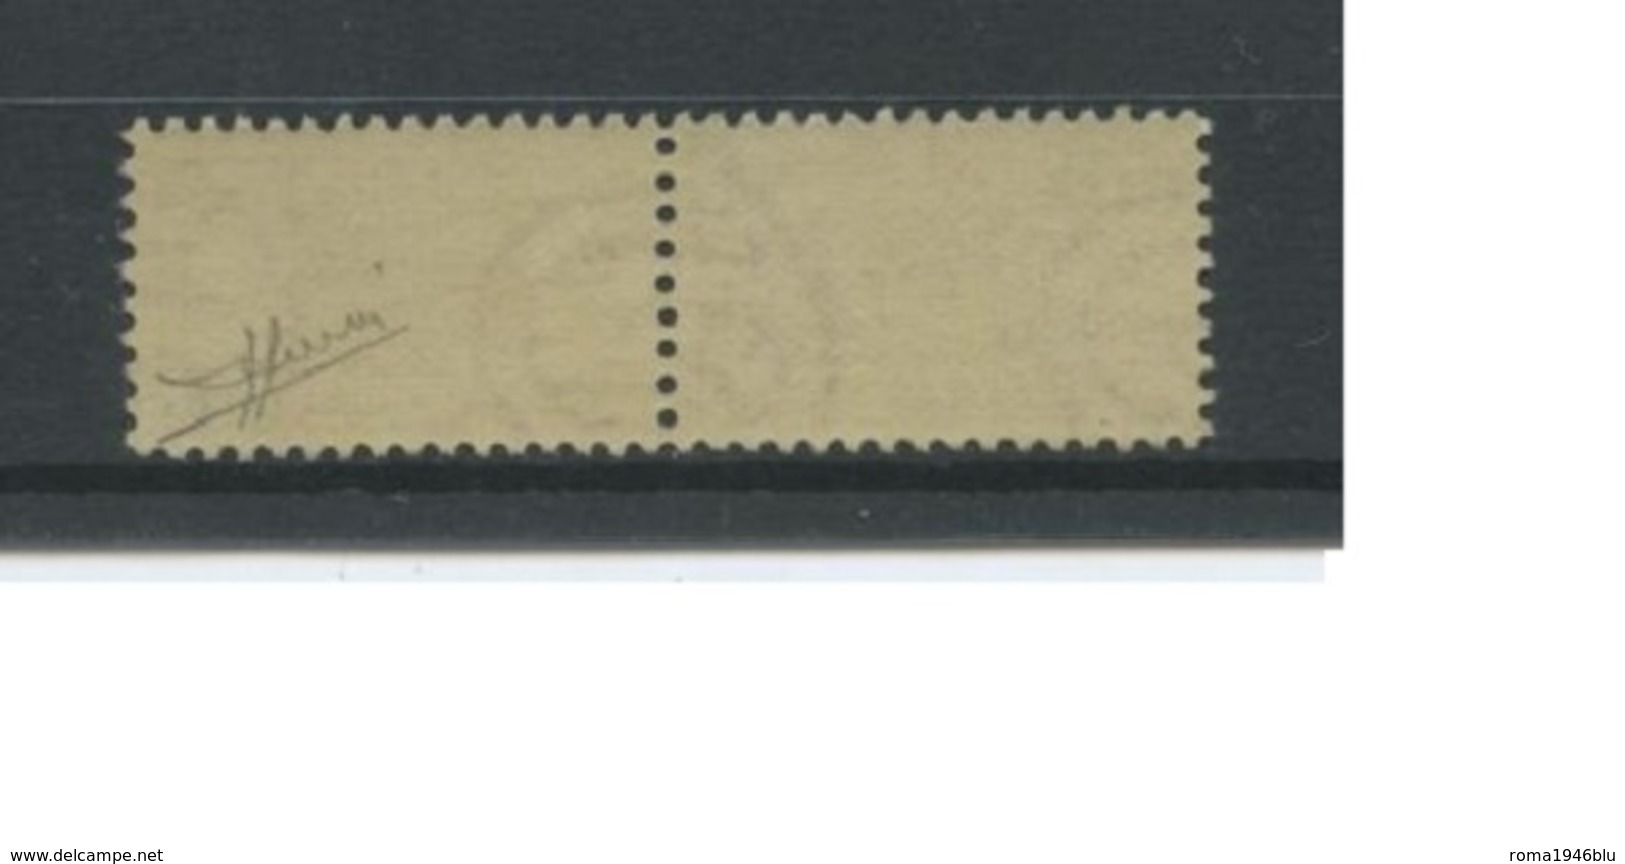 REPUBBLICA 1948 PACCHI POSTALI 300 LIRE ** MNH CENTRATISSIMO LUSSO C. SORANI - Paketmarken